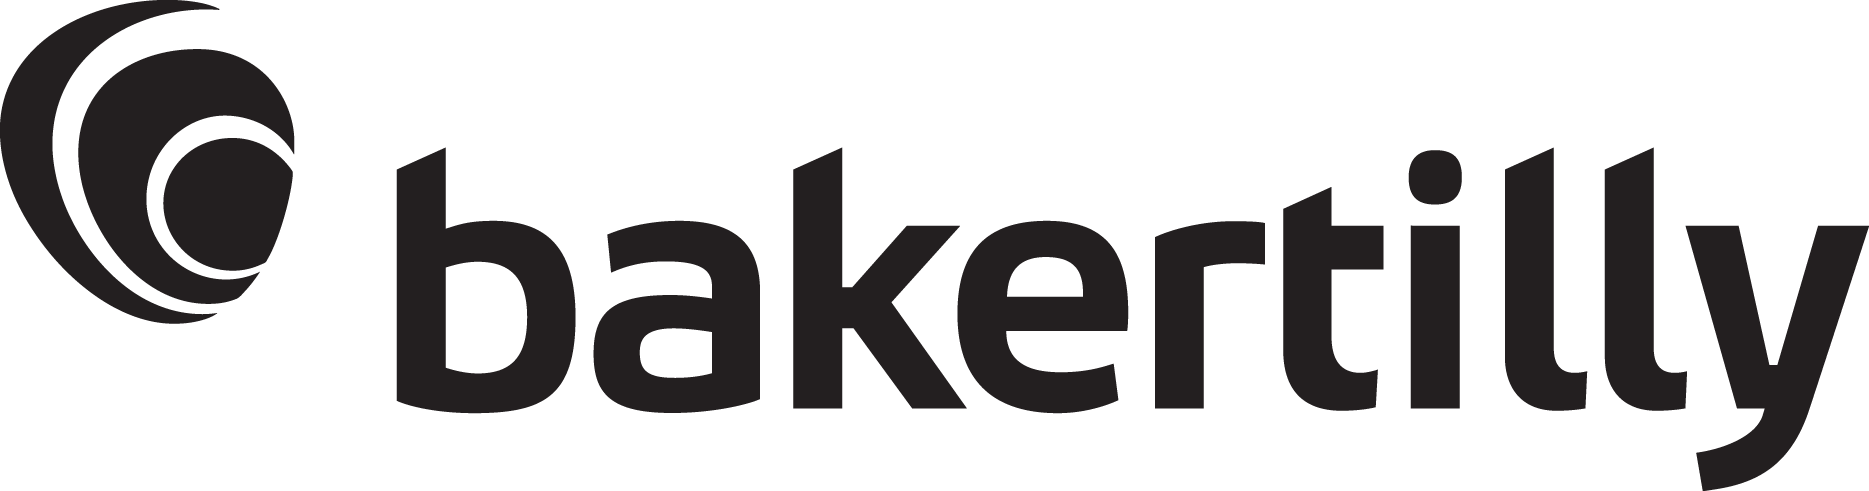 Baker Tilly Logo-Black